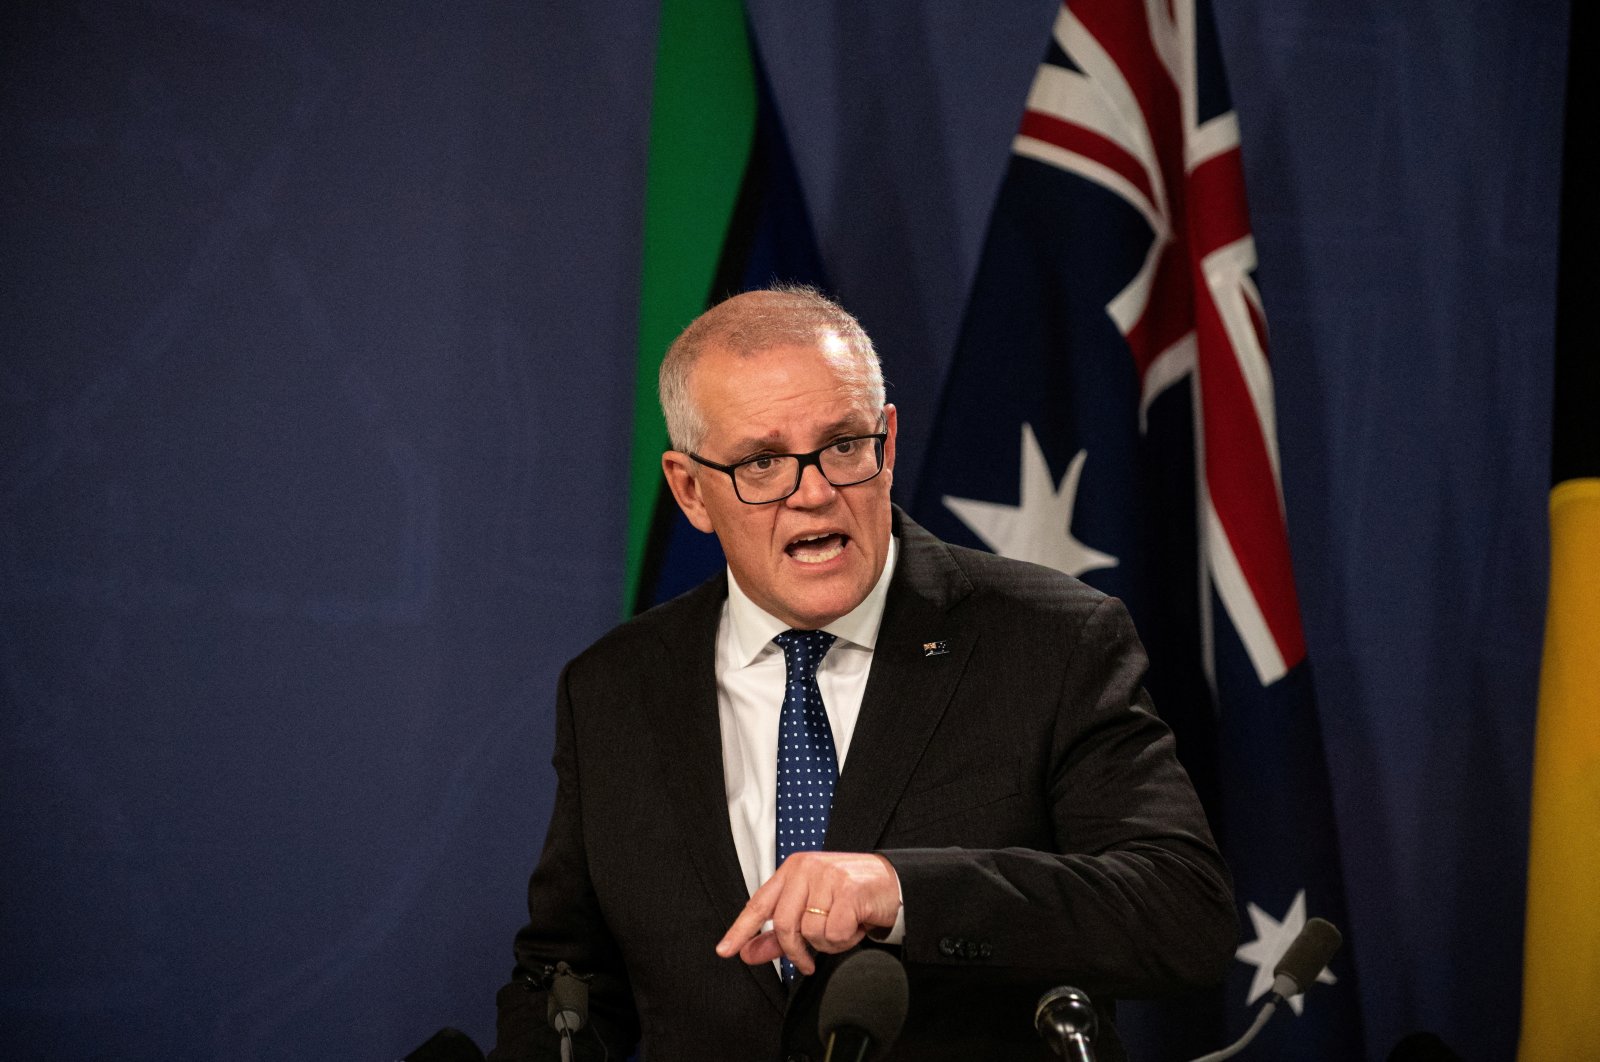 Kementerian rahasia mantan PM Australia ‘merusak’ pemerintah yang bertanggung jawab